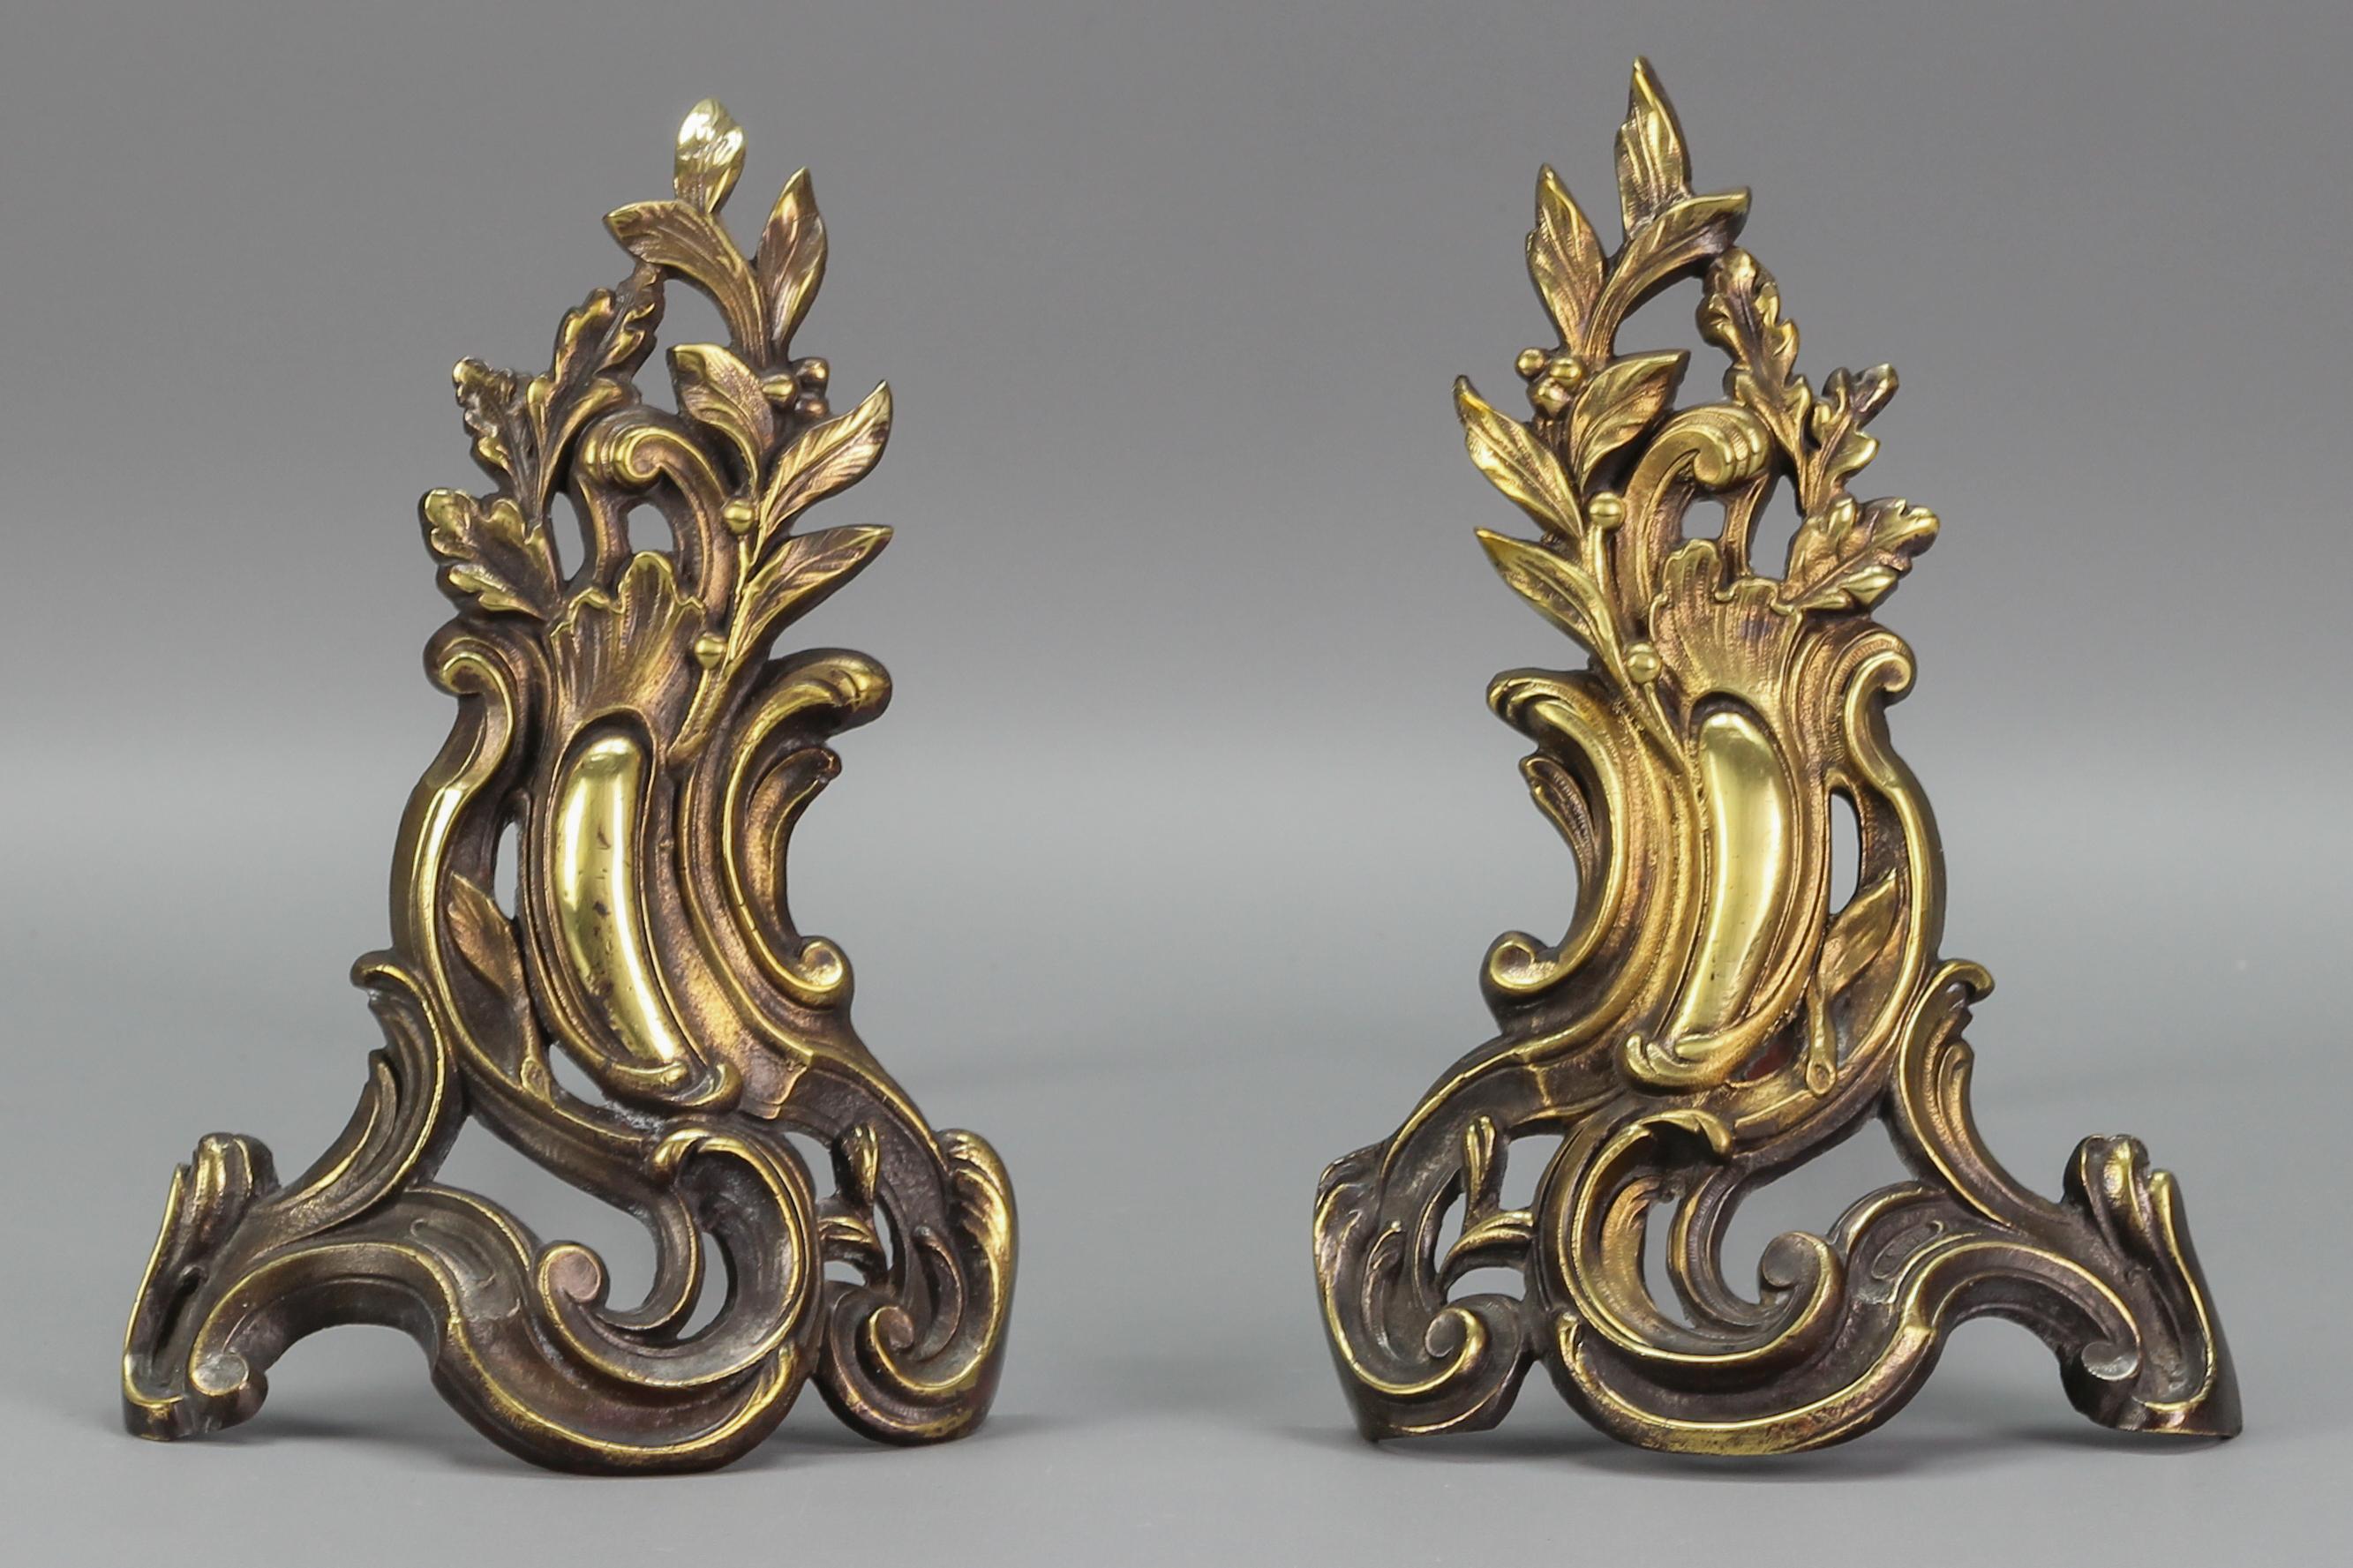 Ein Paar antike Feuerböcke im Stil Louis XV oder Rokoko aus Bronze und Eisen, Frankreich, um 1920. Diese prächtigen Feuerböcke oder Andirons sind aus Bronze gefertigt und weisen ein typisches Rokoko-Design auf. Sie haben die Form einer Schnecke mit